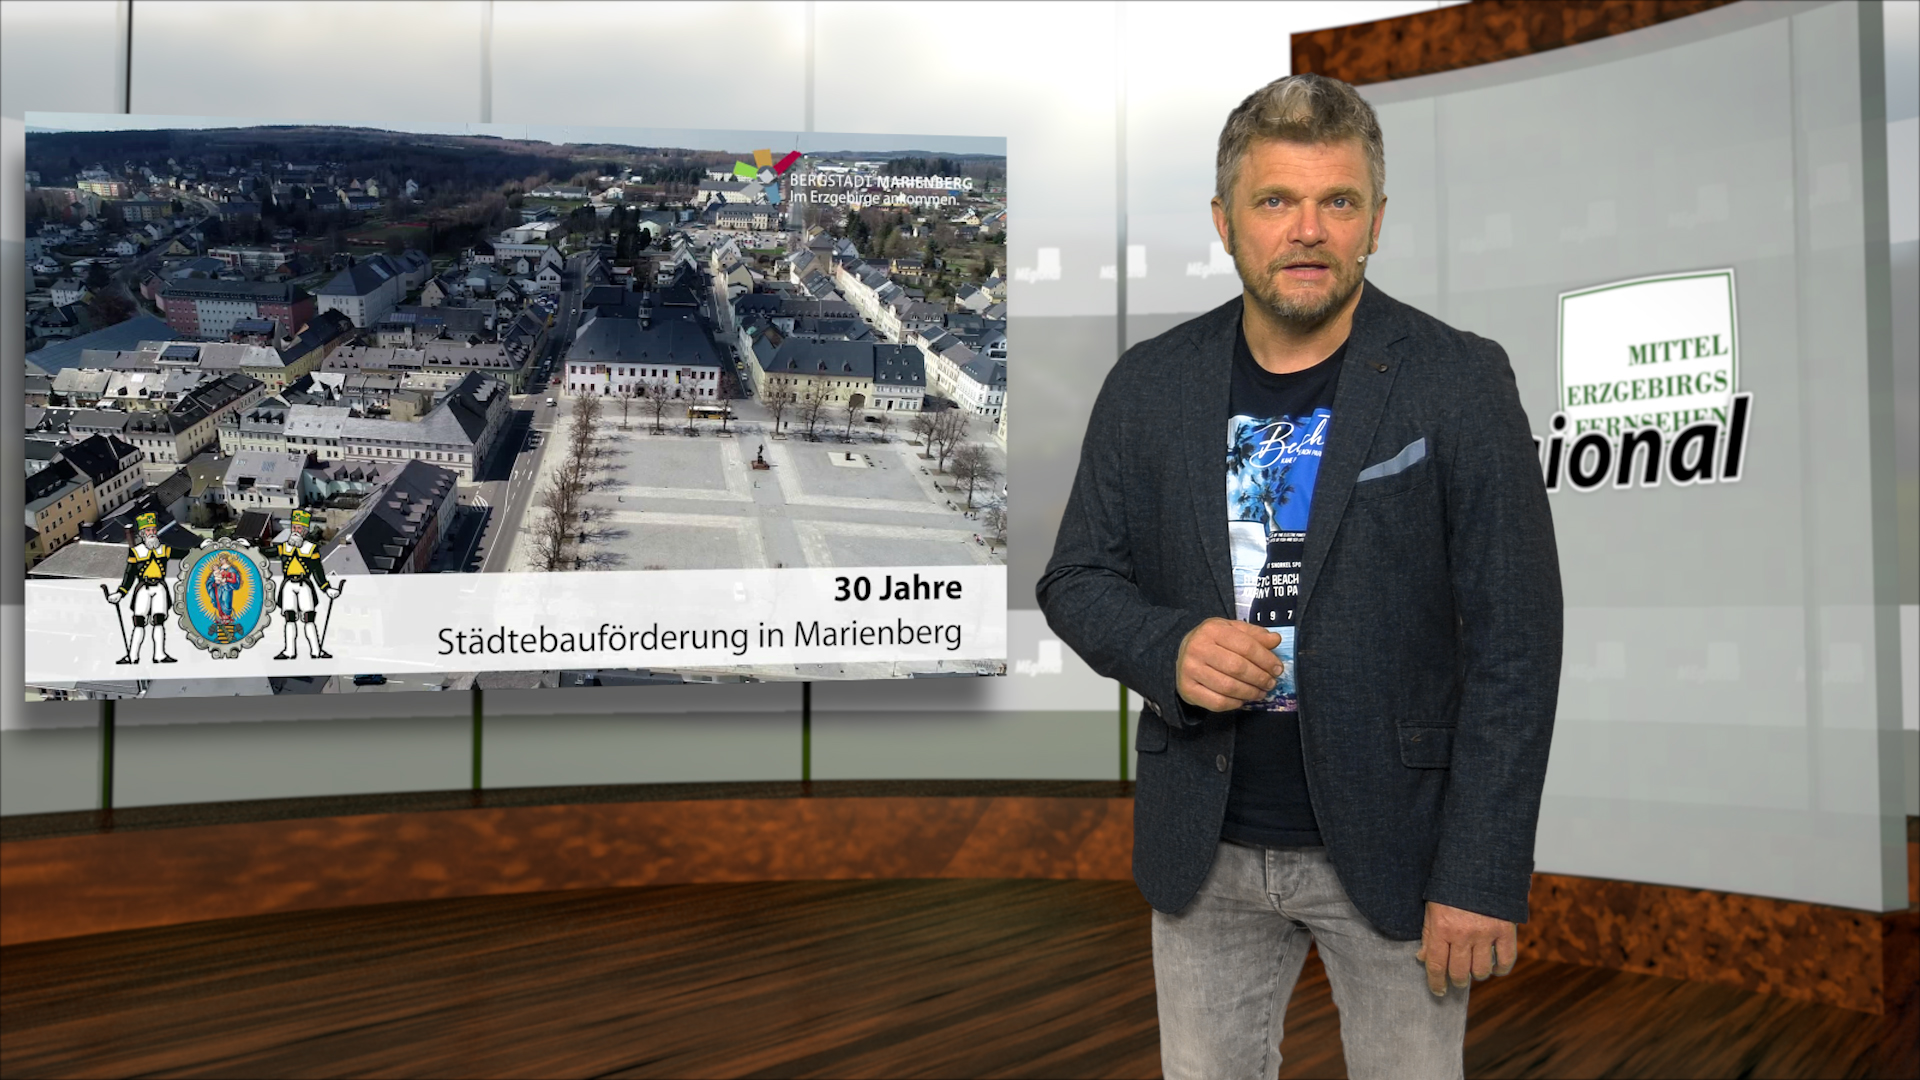 MEgional am 01. Juni 2021 mit dem zweiten Teil zu 30 Jahre Städtebauförderung in Marienberg